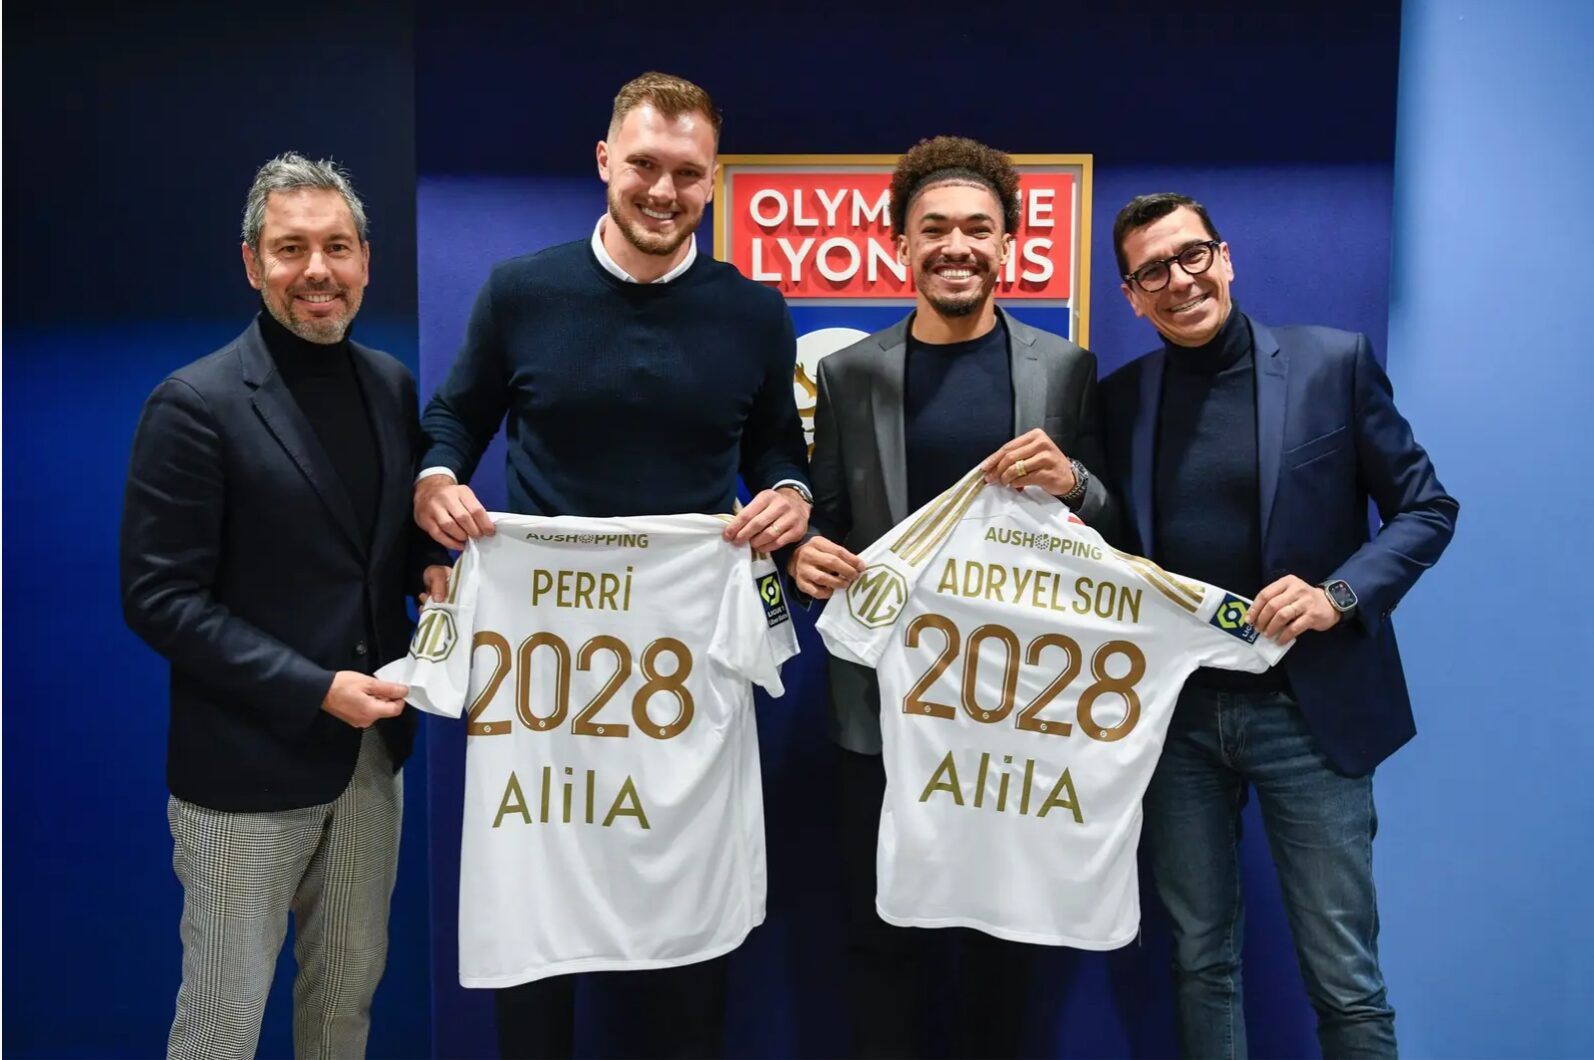 Lucas Perri et Adryelson ont signé jusqu'en 2028 avec l'OL